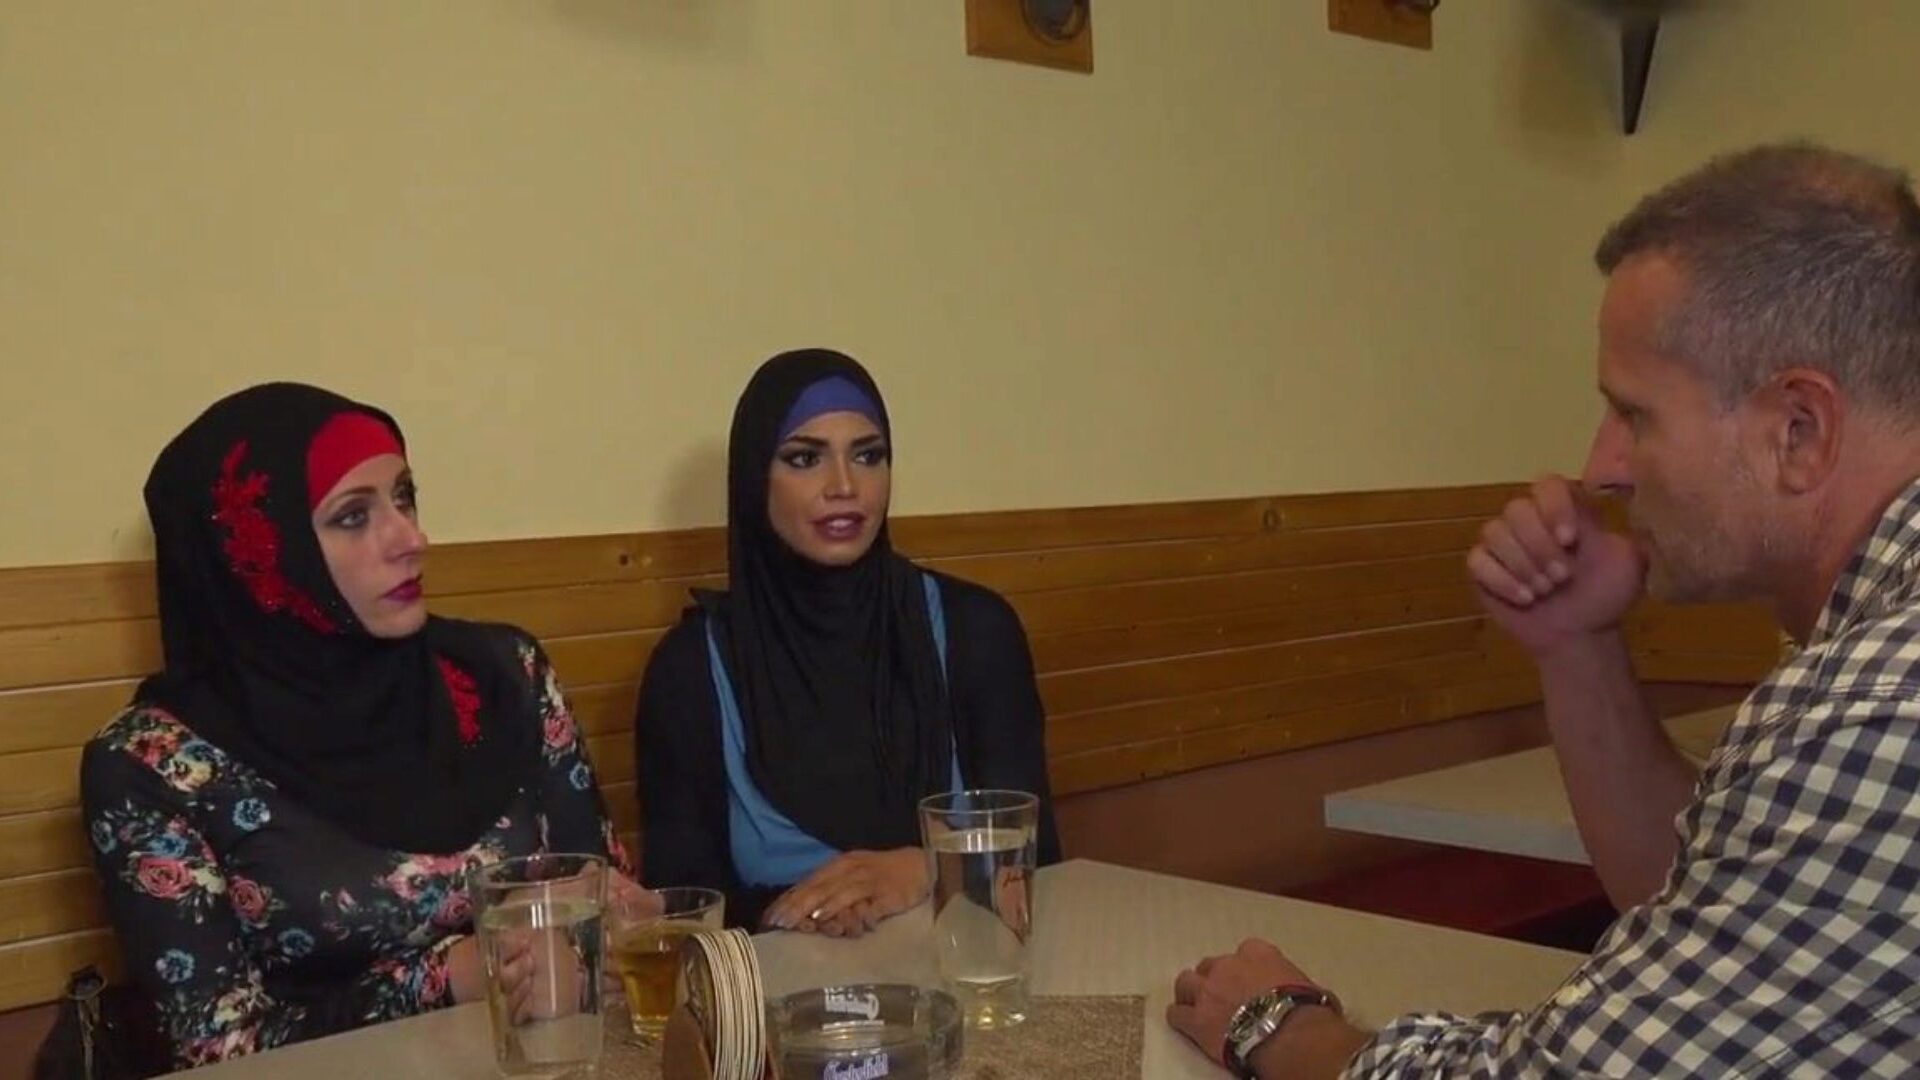 hijab-muslimiskenaario 11, ilmainen muslimi-hijab-hd-porno a9 katsella hijab-muslimiskenaario 11 -videota xhamsterilla, paksuimmalla hd-kytkennän putkisivustolla, jossa on tonnia ilmaisia ​​arabi-muslimi-hijab- ja arabihijab-pornoelokuvia